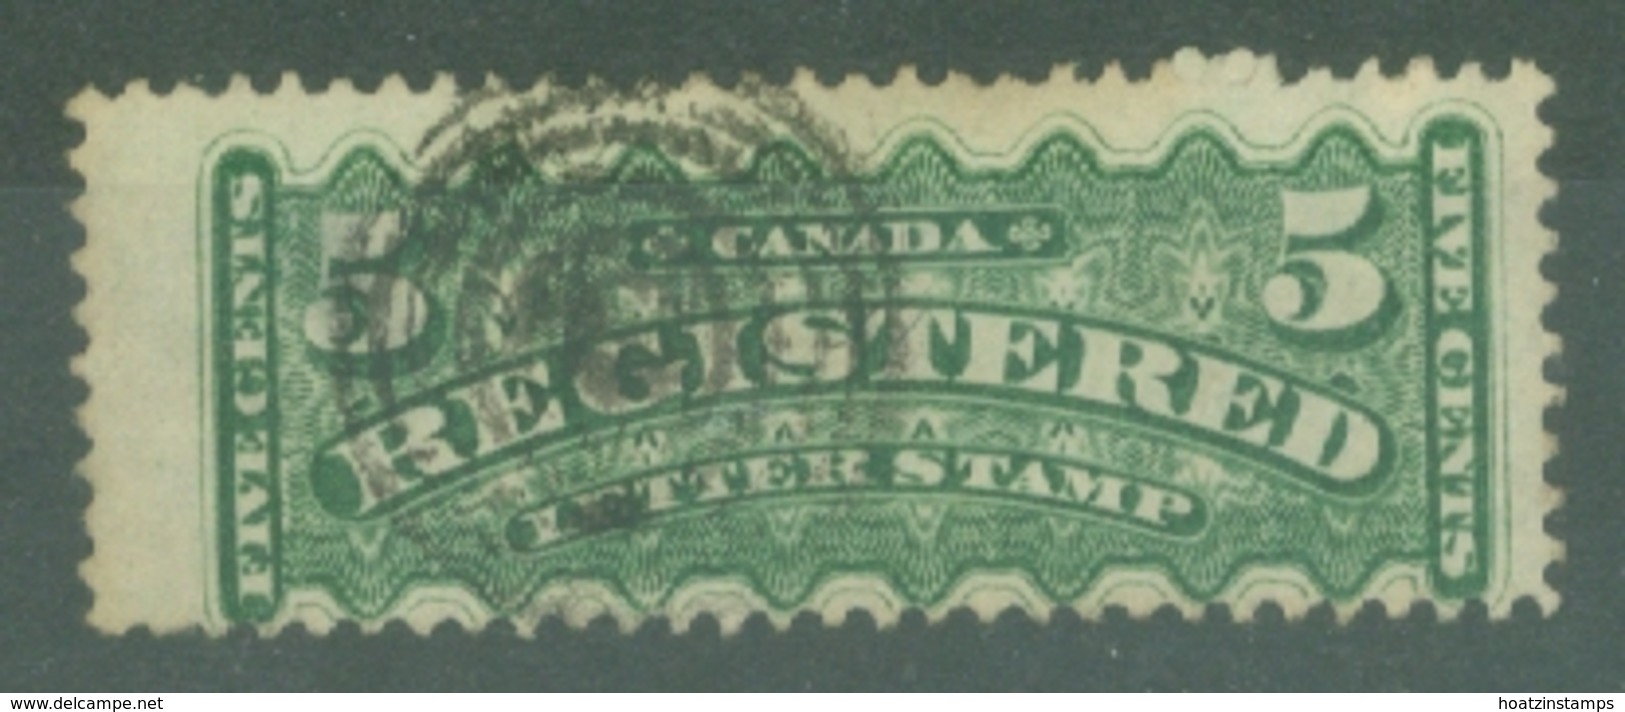 Canada: 1875/92   Registration Stamp   SG R7a    5c   Dull Sea-green   Used - Einschreibemarken